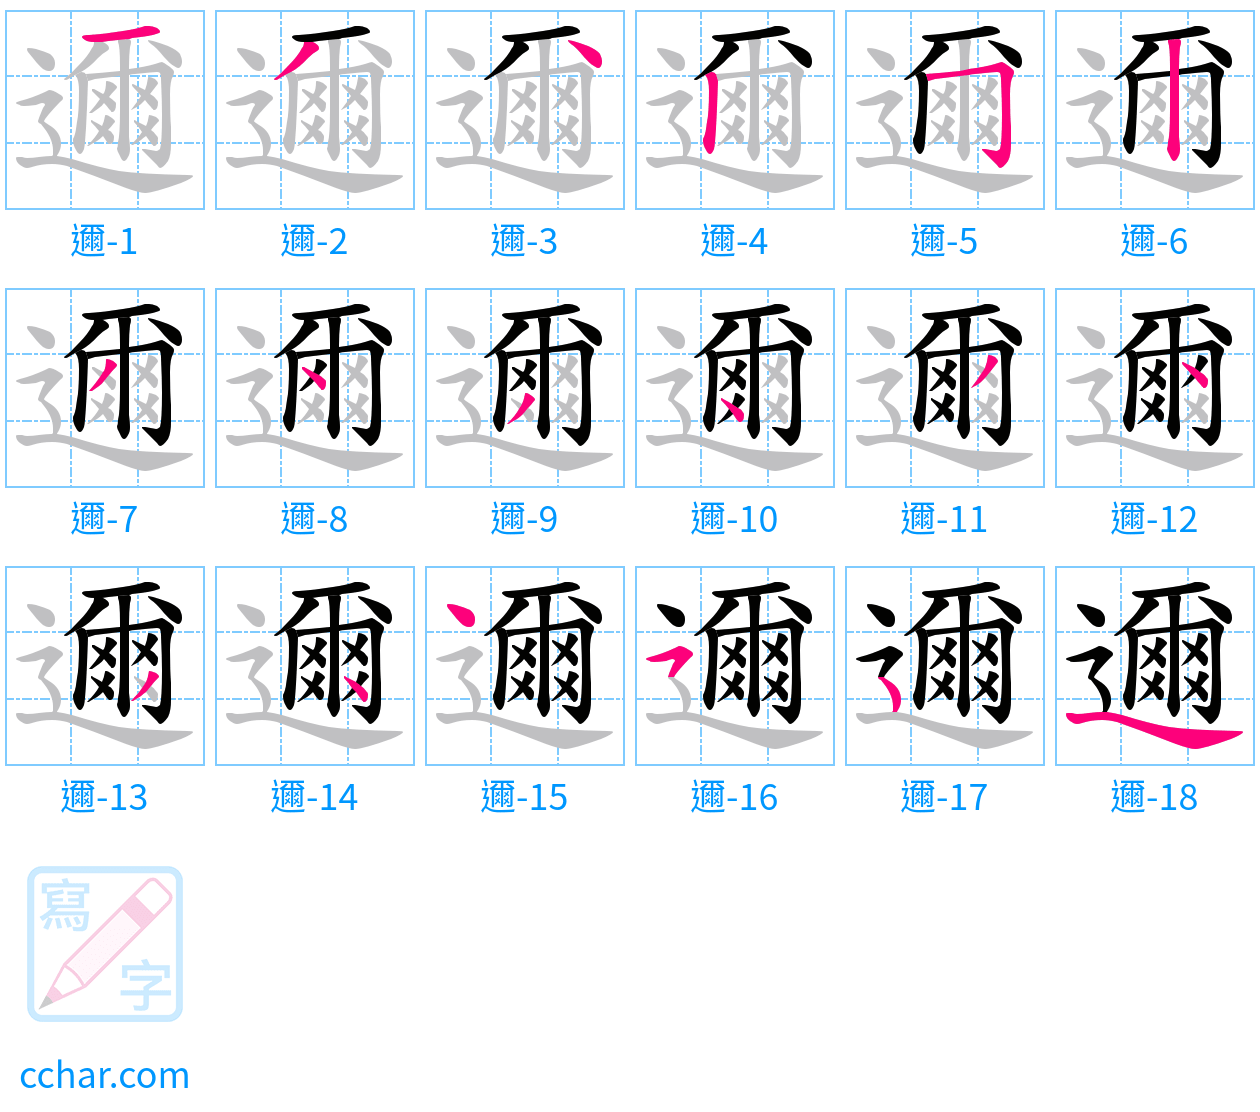 邇 stroke order step-by-step diagram